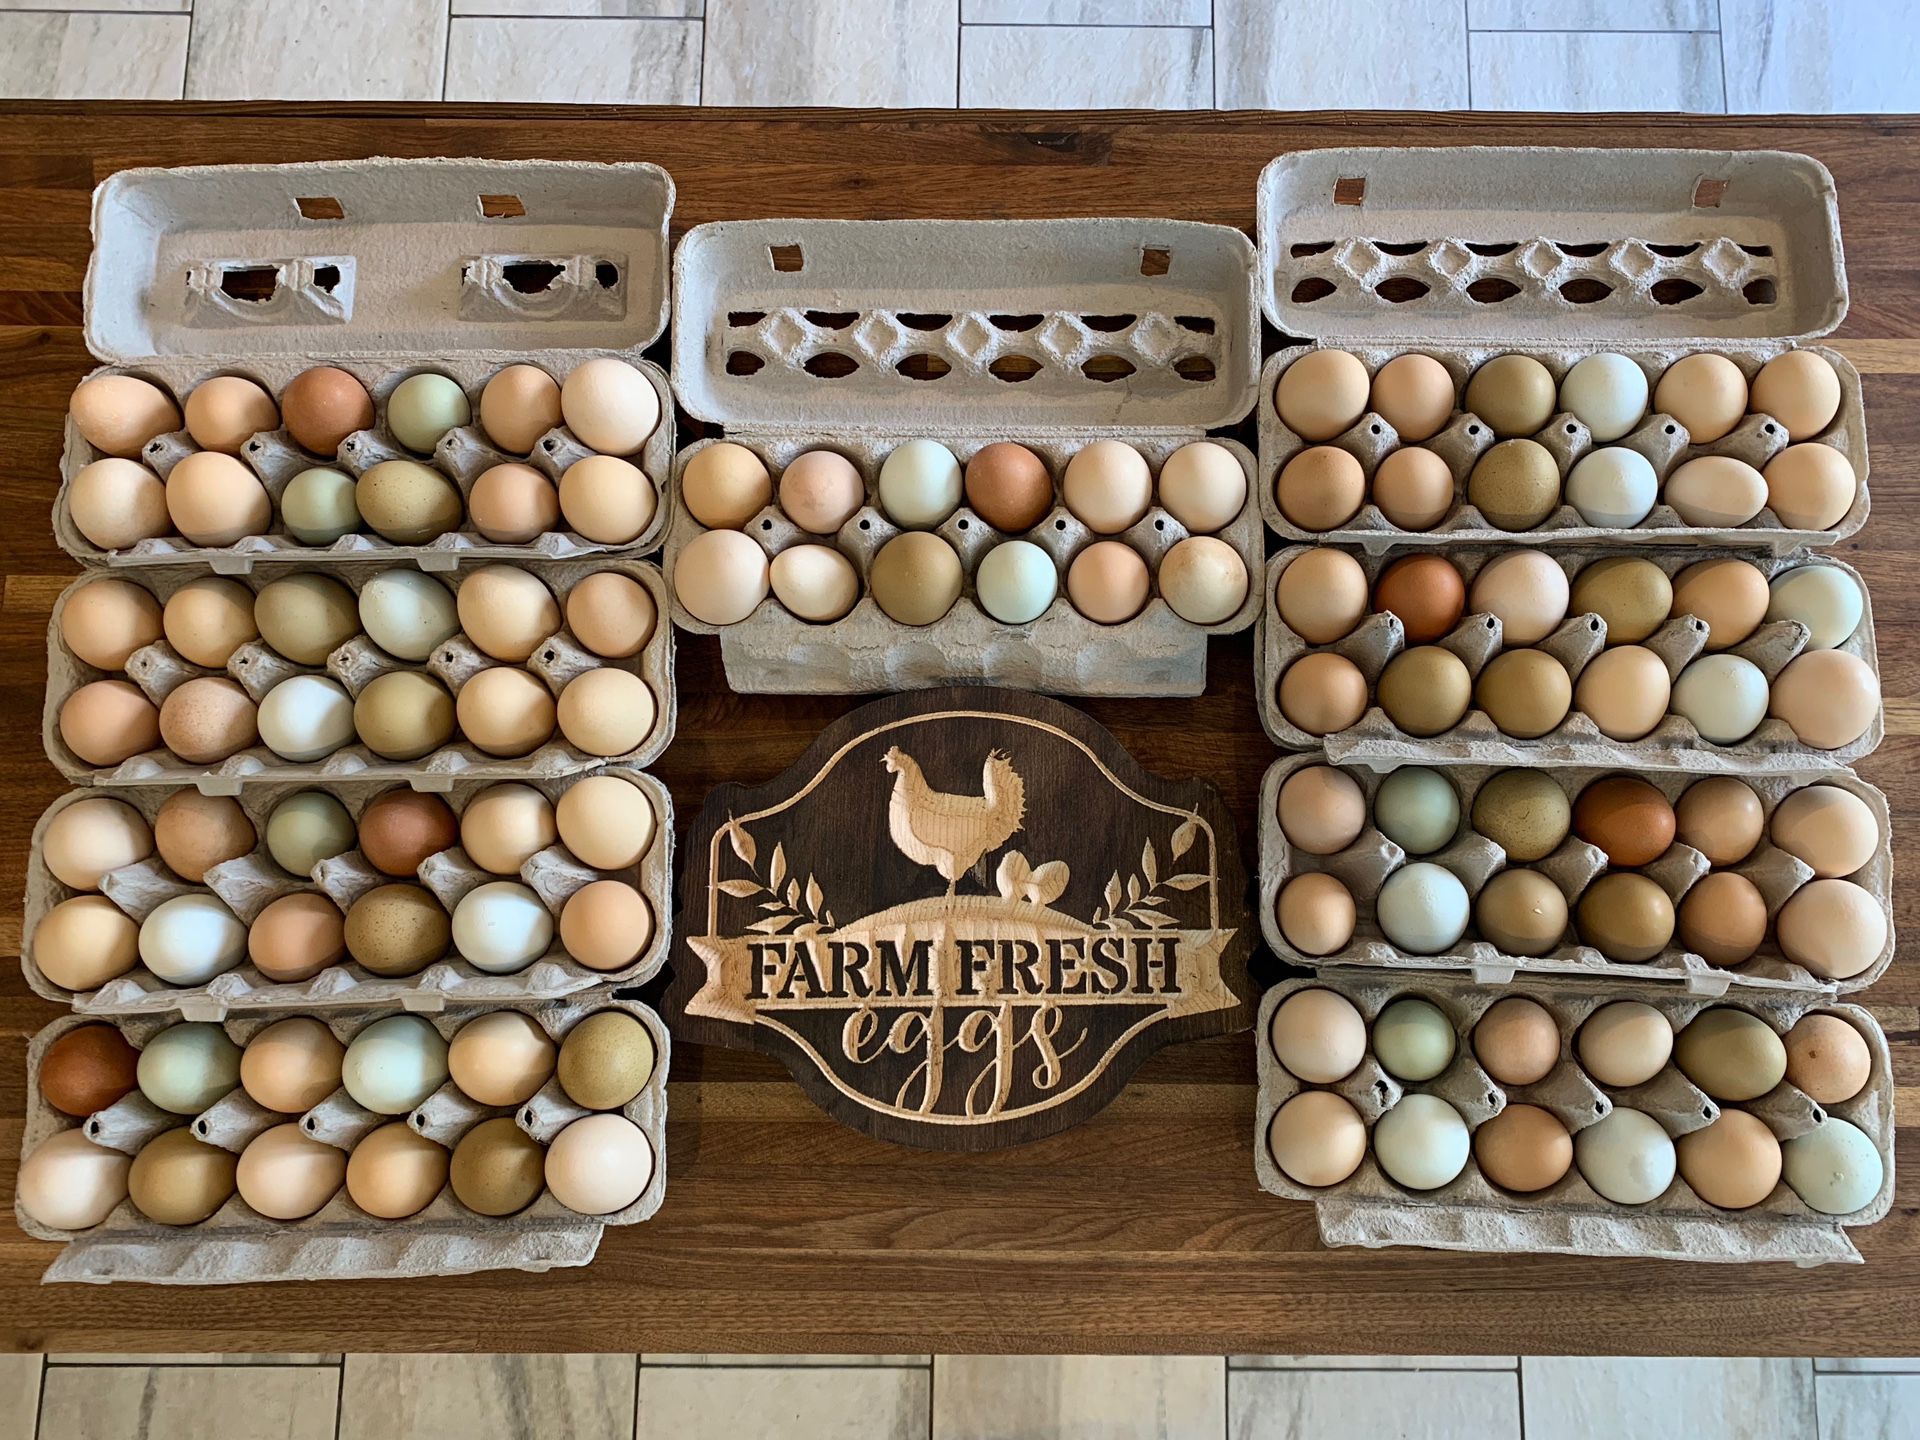 Farm Fresh Free Range Eggs